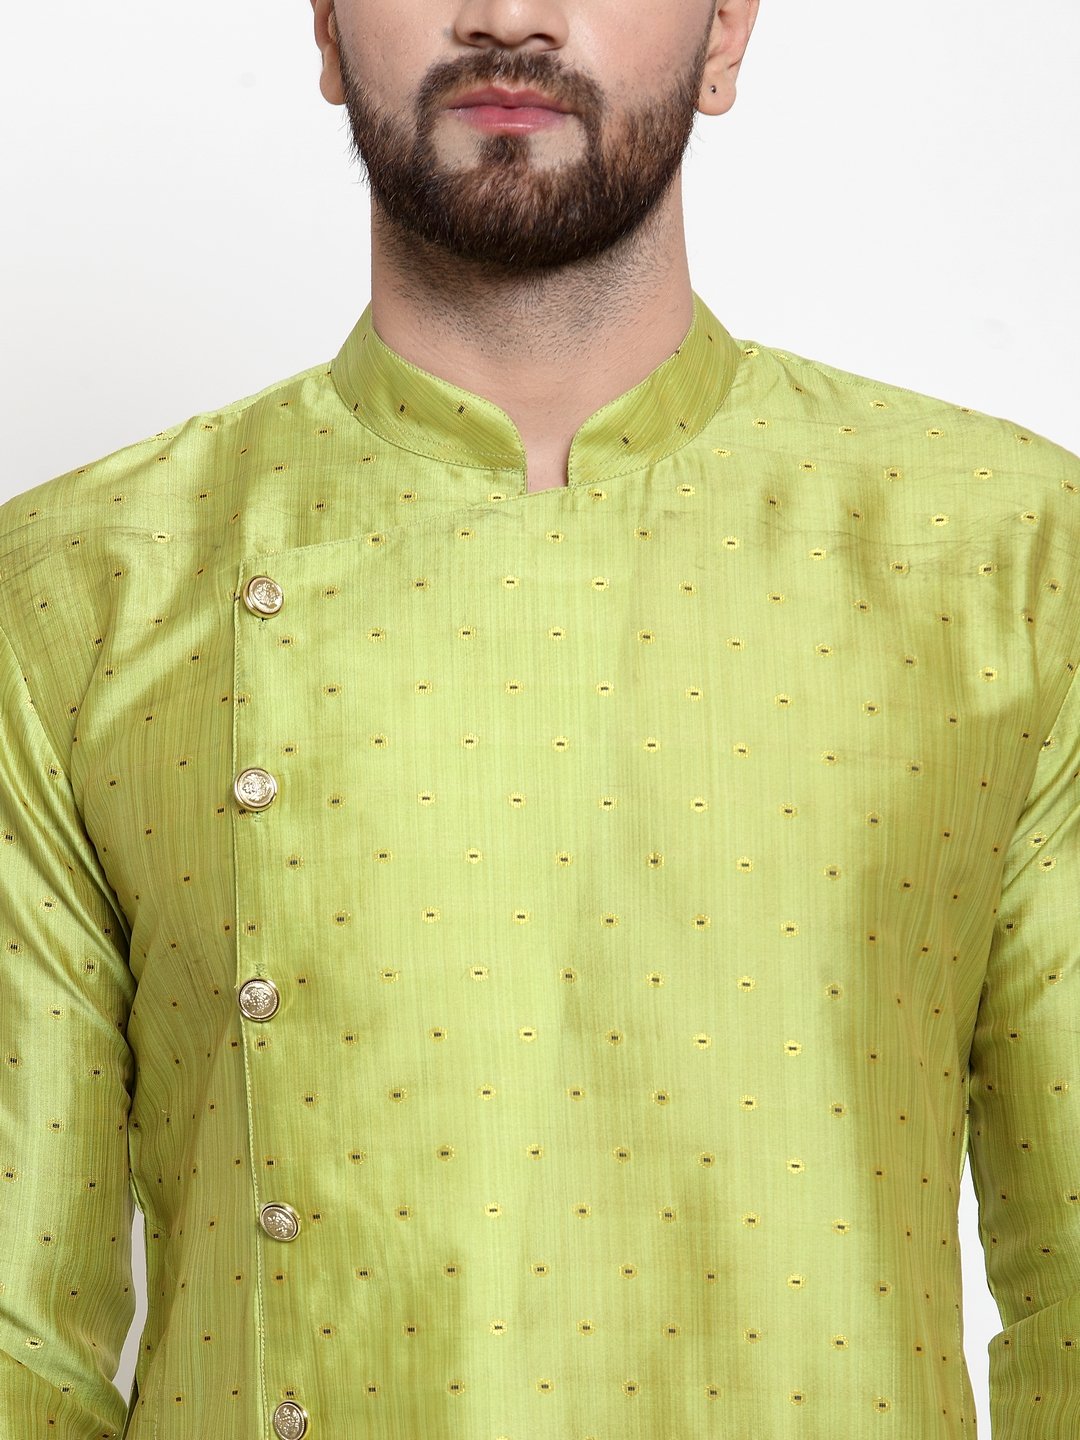 Jompers Men Light-Green & Golden Self Design Kurta Only - Distacart